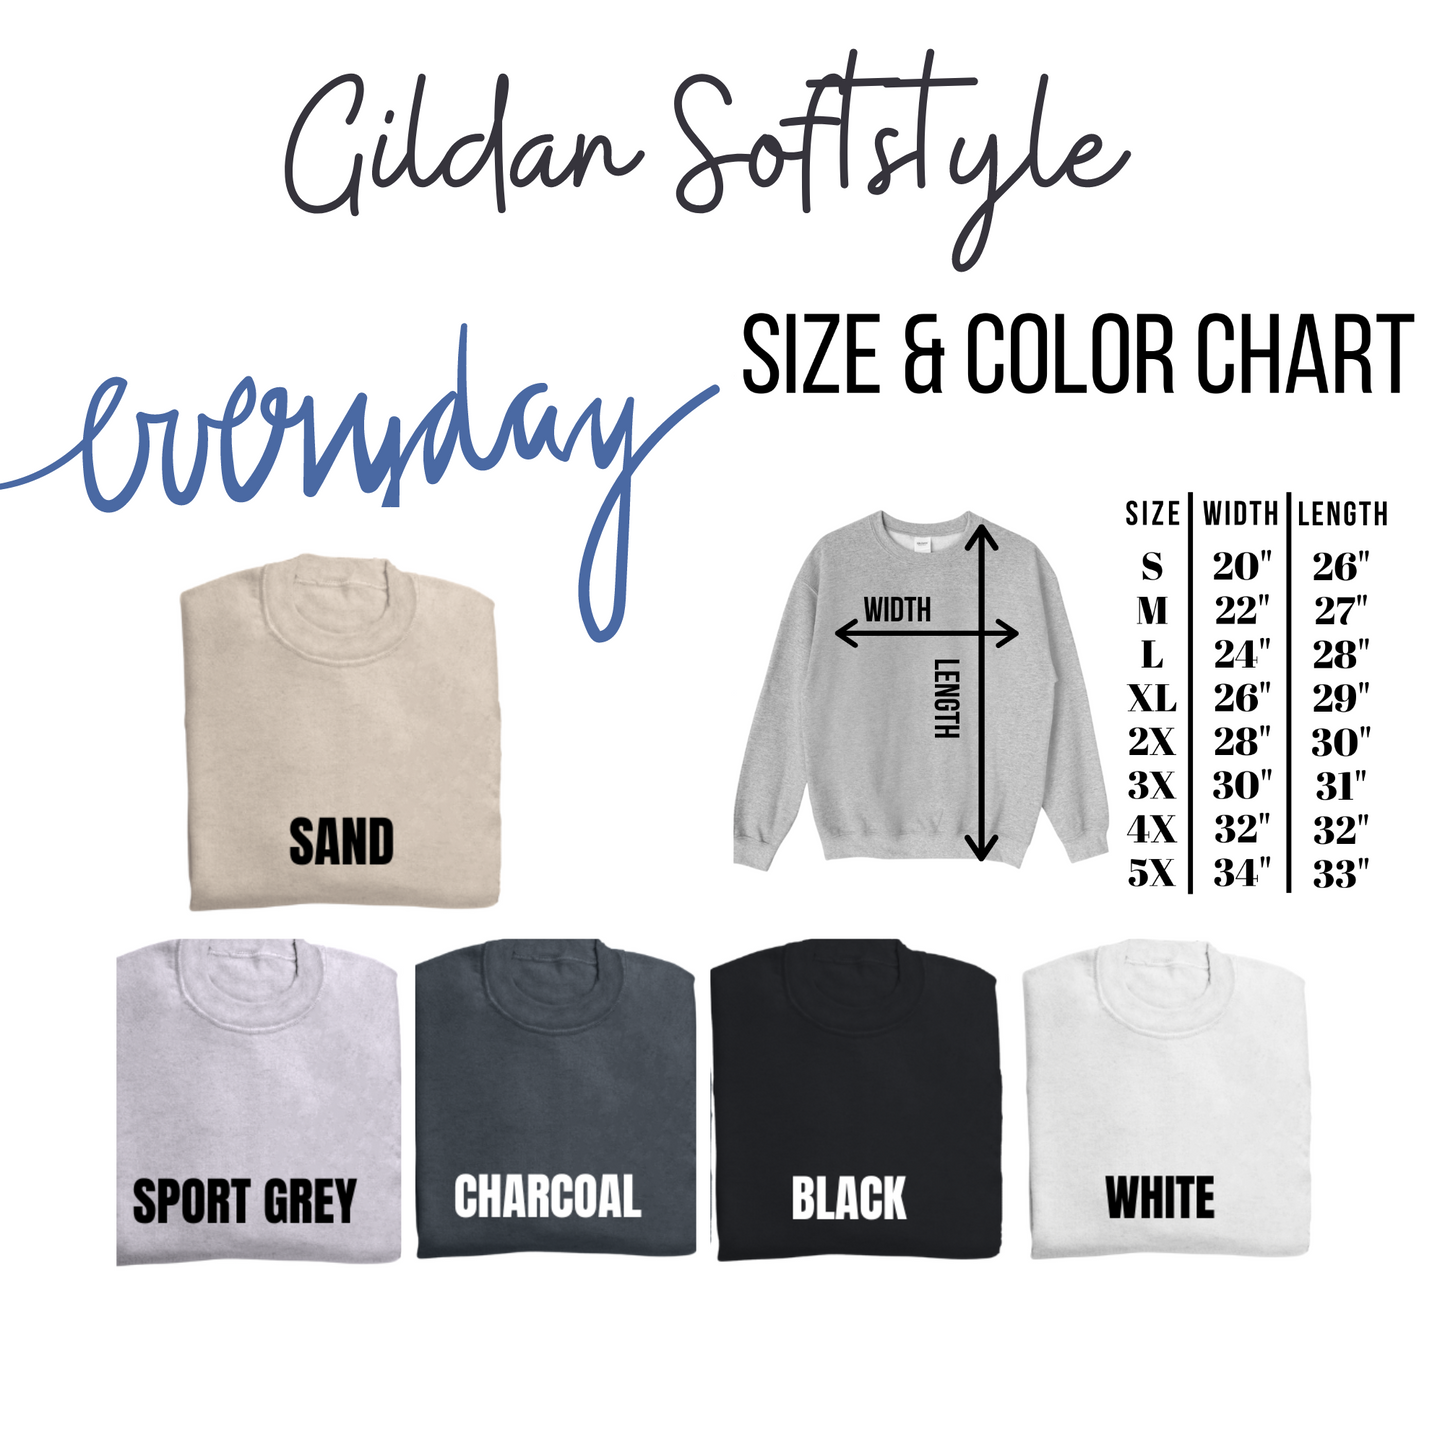 Grace Upon Grace Gildan Softstyle Sweatshirt